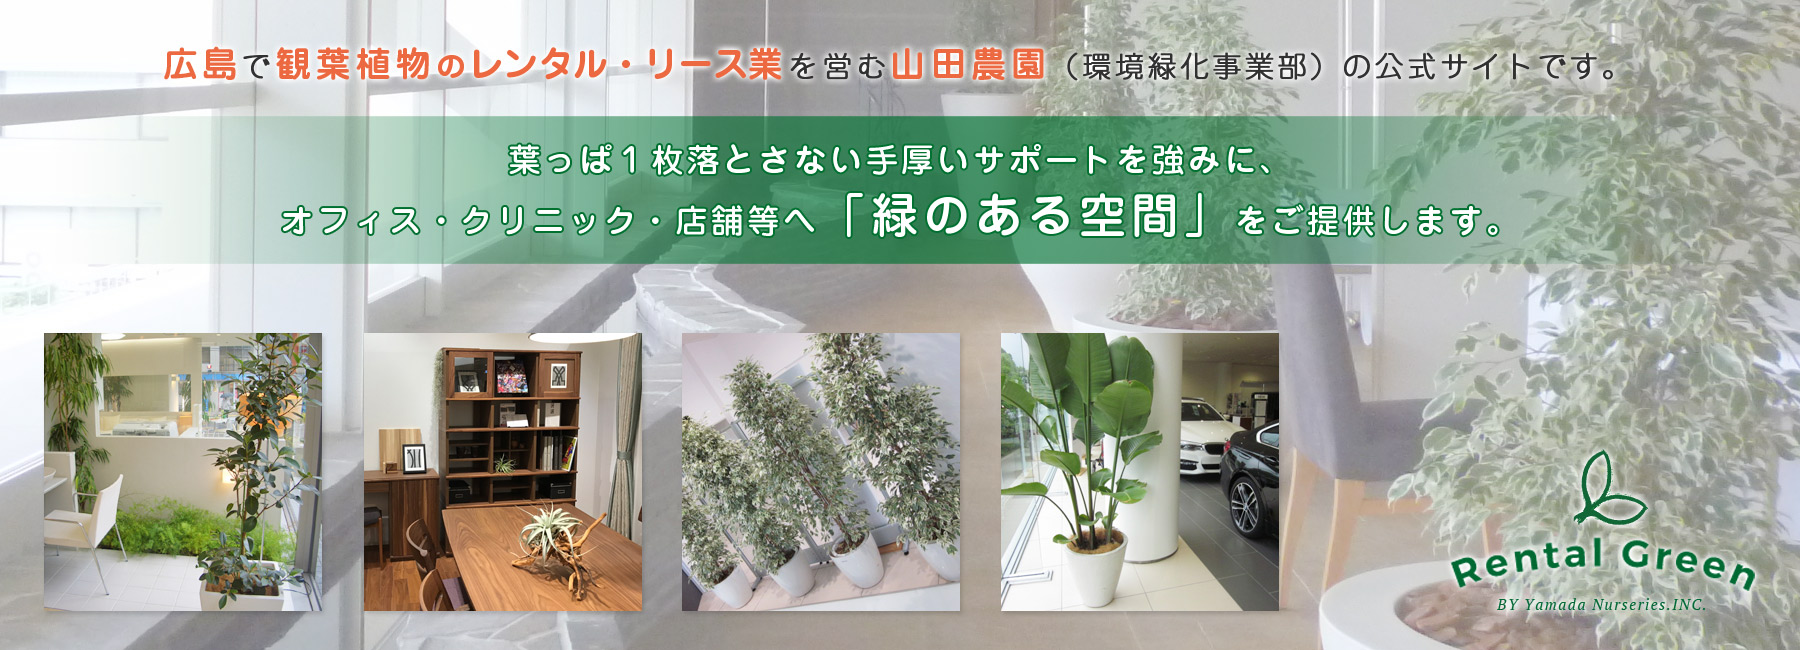  » 【ショールーム】広島で観葉植物のレンタルした設置事例